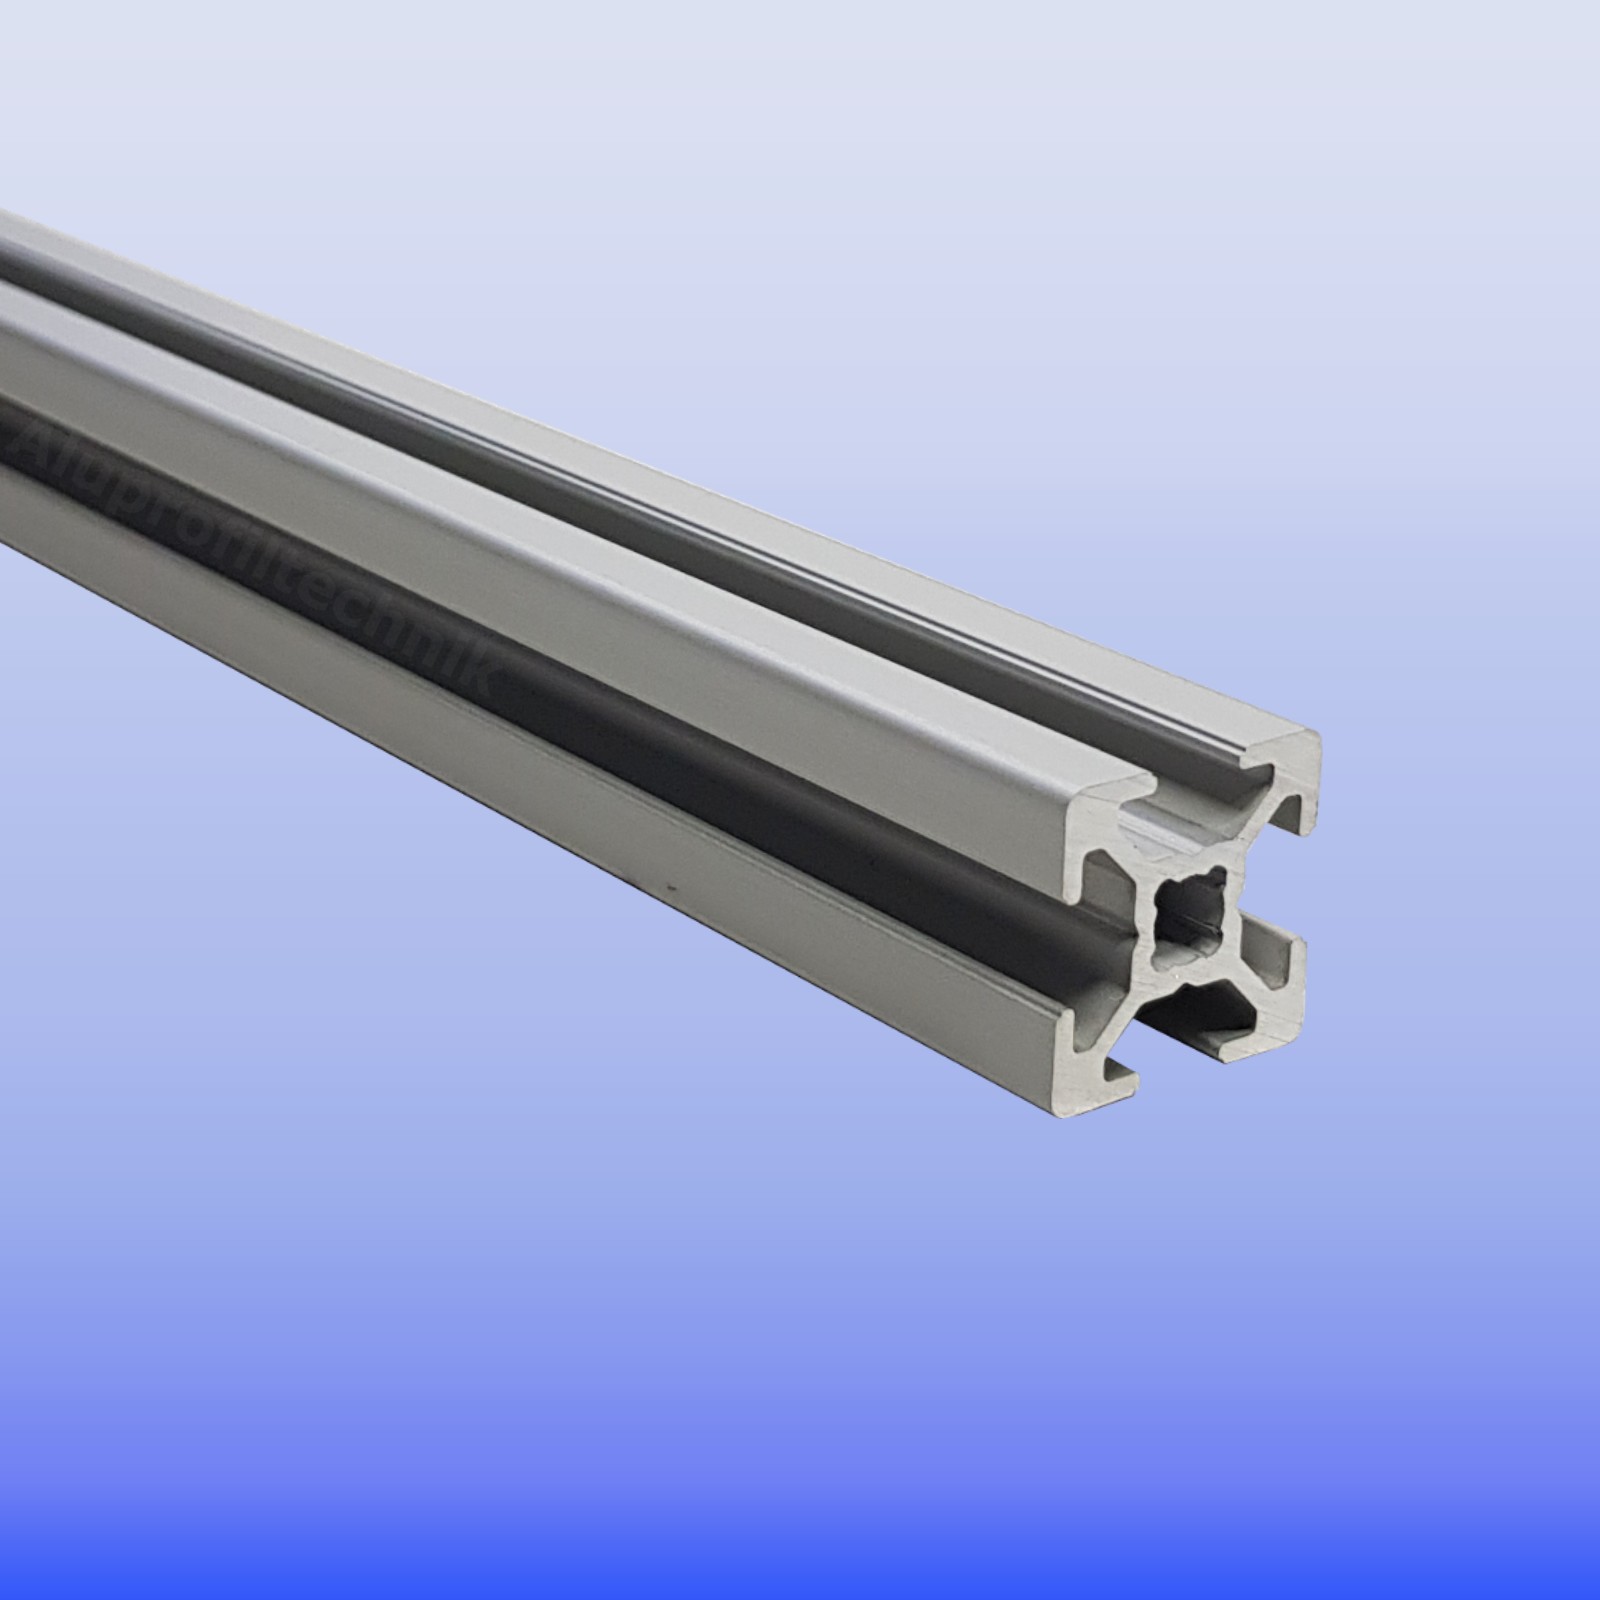 Konstruktionsprofil Aluprofil Aluminium Profil 20x20 2020 Nut 5-70mm-1200mm 